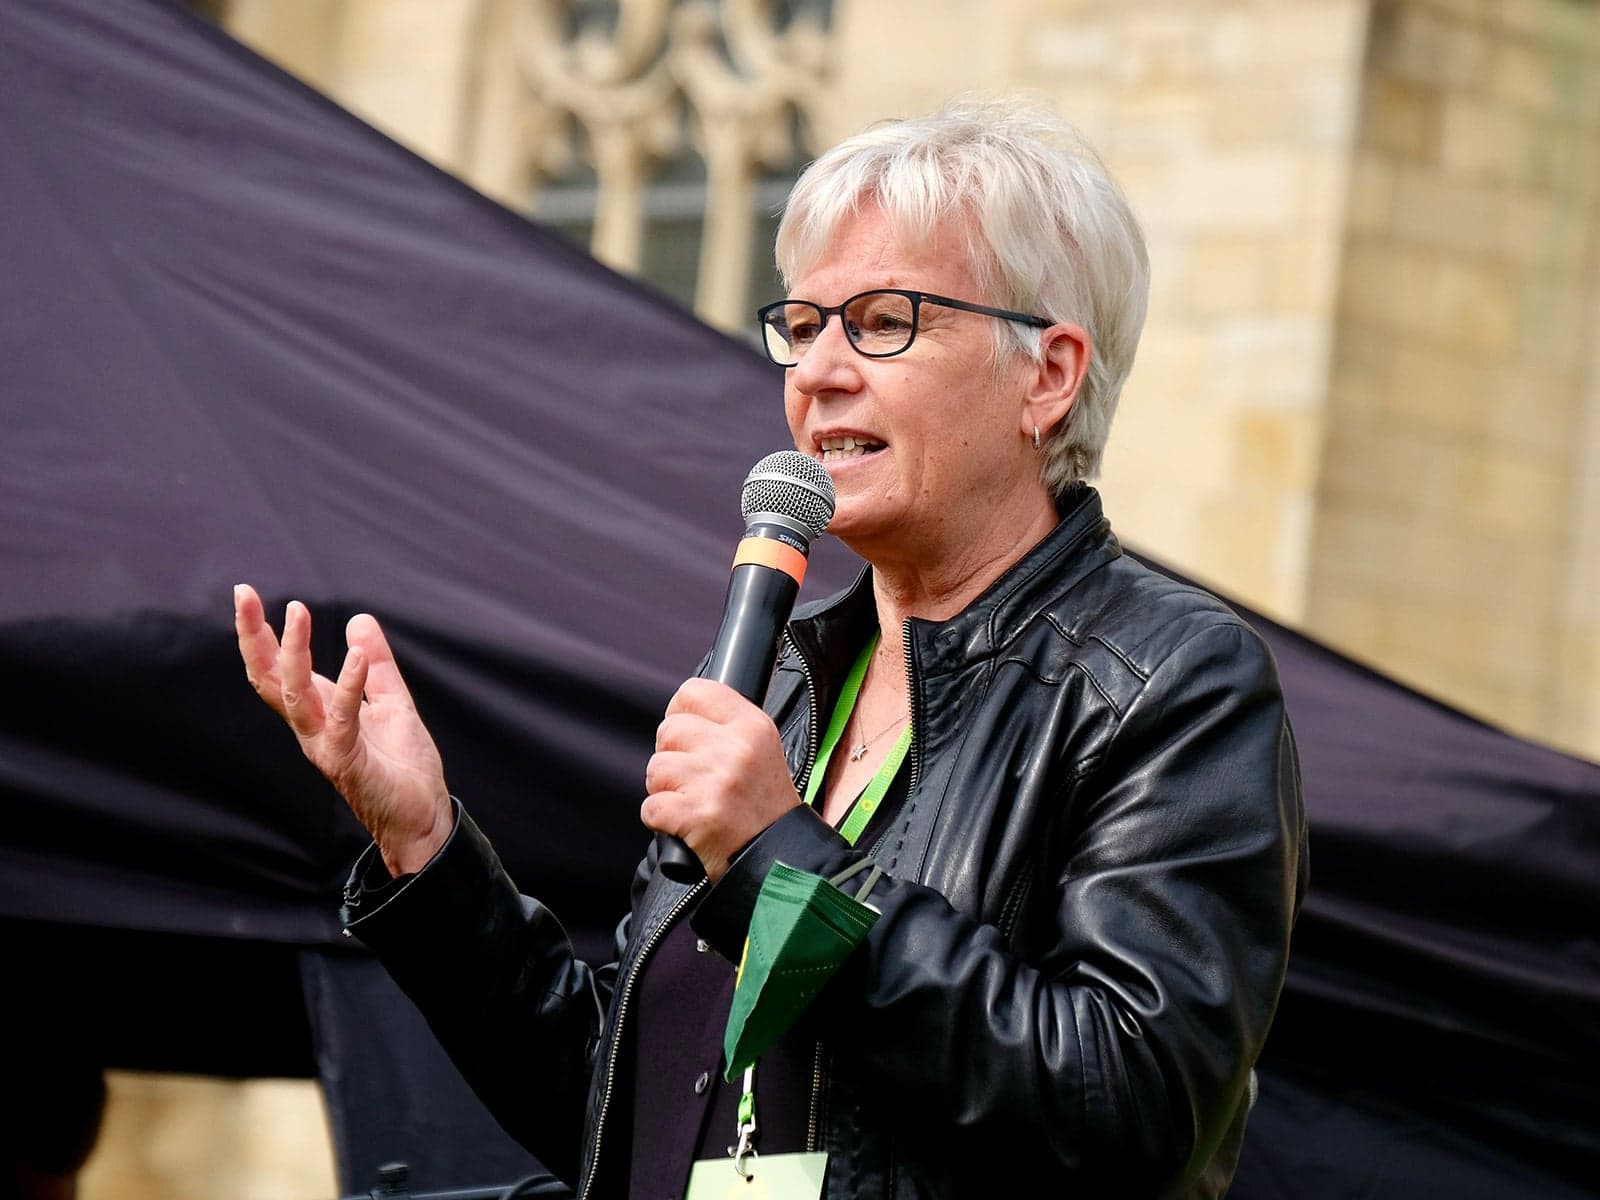 Maria Klein-Schmeink mit Mikrophon bei einer oeffentlichen Rede in schwarzer Lederjacke